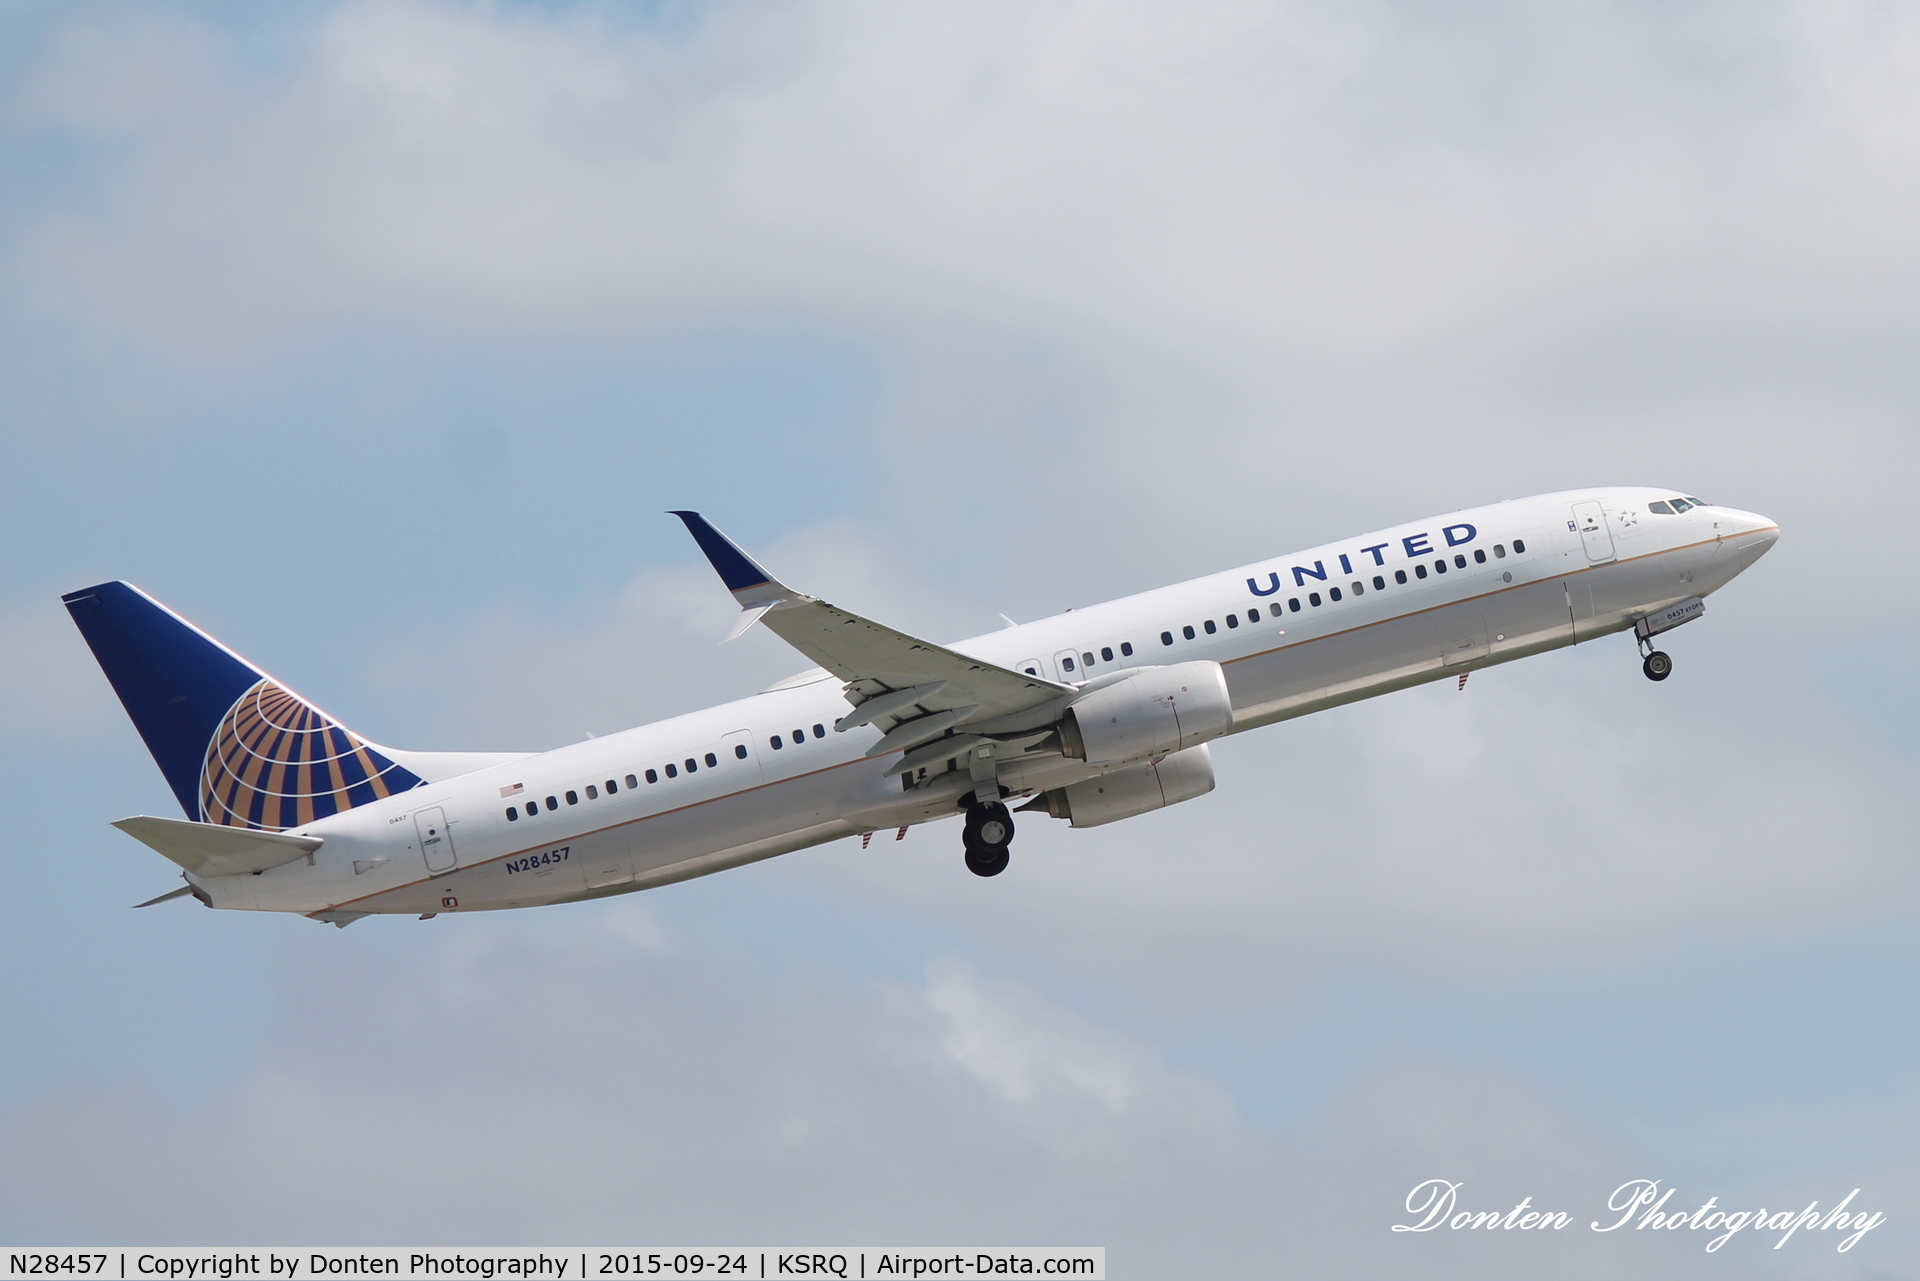 N28457, 2012 Boeing 737-924/ER C/N 41744, United Flight 1708 (N28457) departs Sarasota-Bradenton International Airport enroute to Chicago-O'Hare International Airport